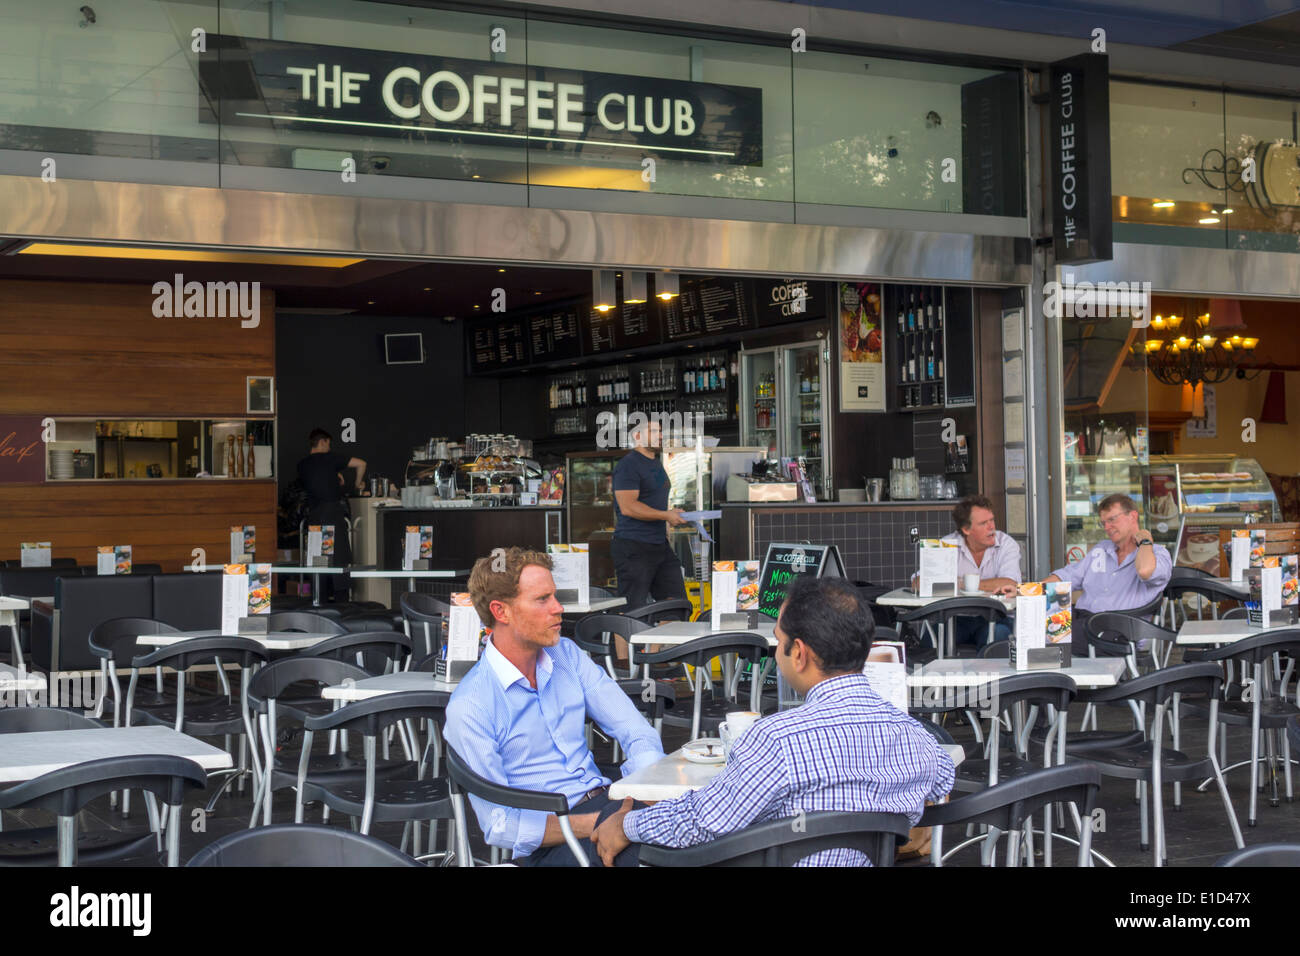 Brisbane Australie, le Coffee Club, Brisbane Square, homme hommes, café, restaurant restaurants repas cafés, AU140313048 Banque D'Images